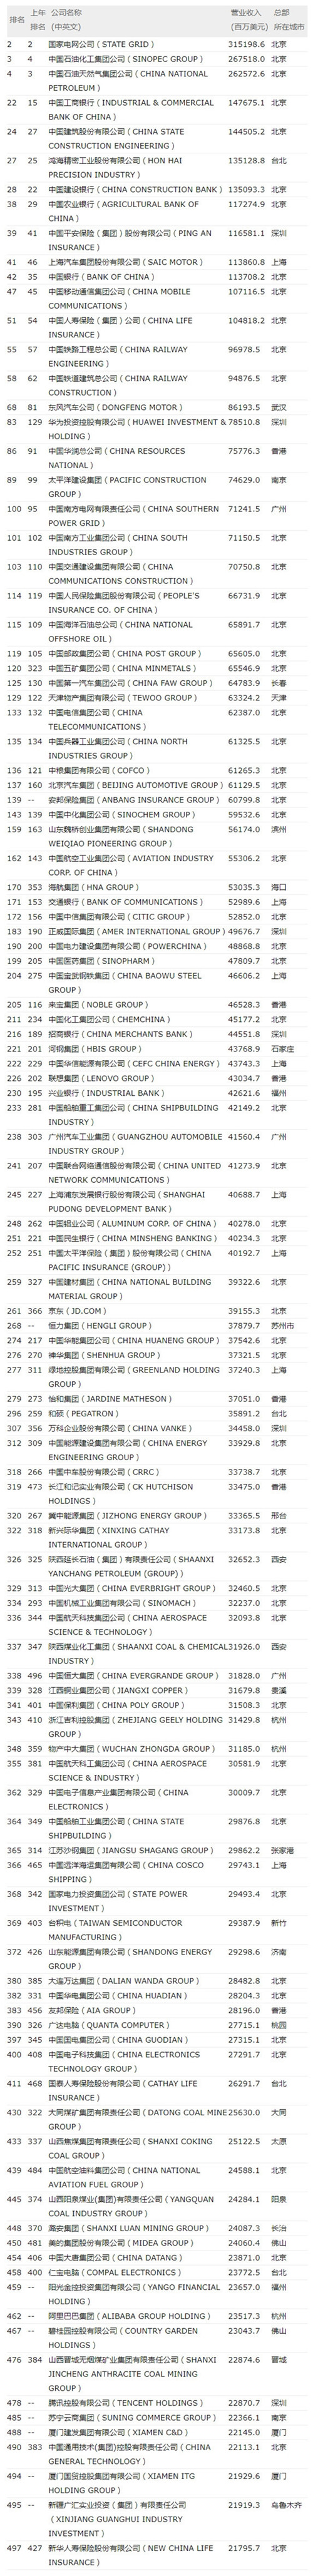 2017世界500强:中国115家公司上榜公 华为排名第83名